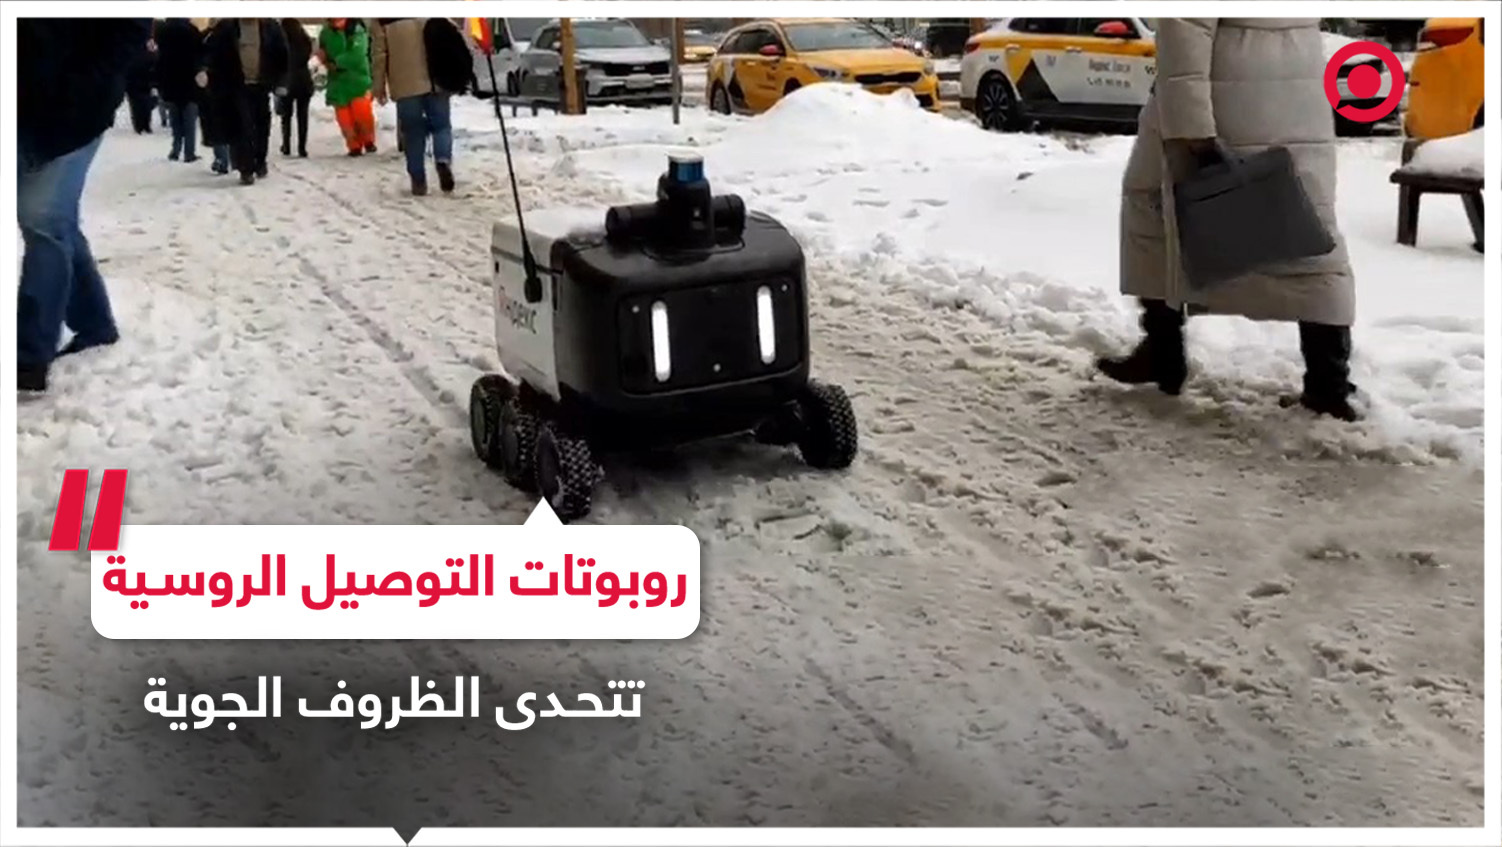 روبوتات "ياندكس" الروسية لخدمات التوصيل تتحدى ظروف الطقس القاسية